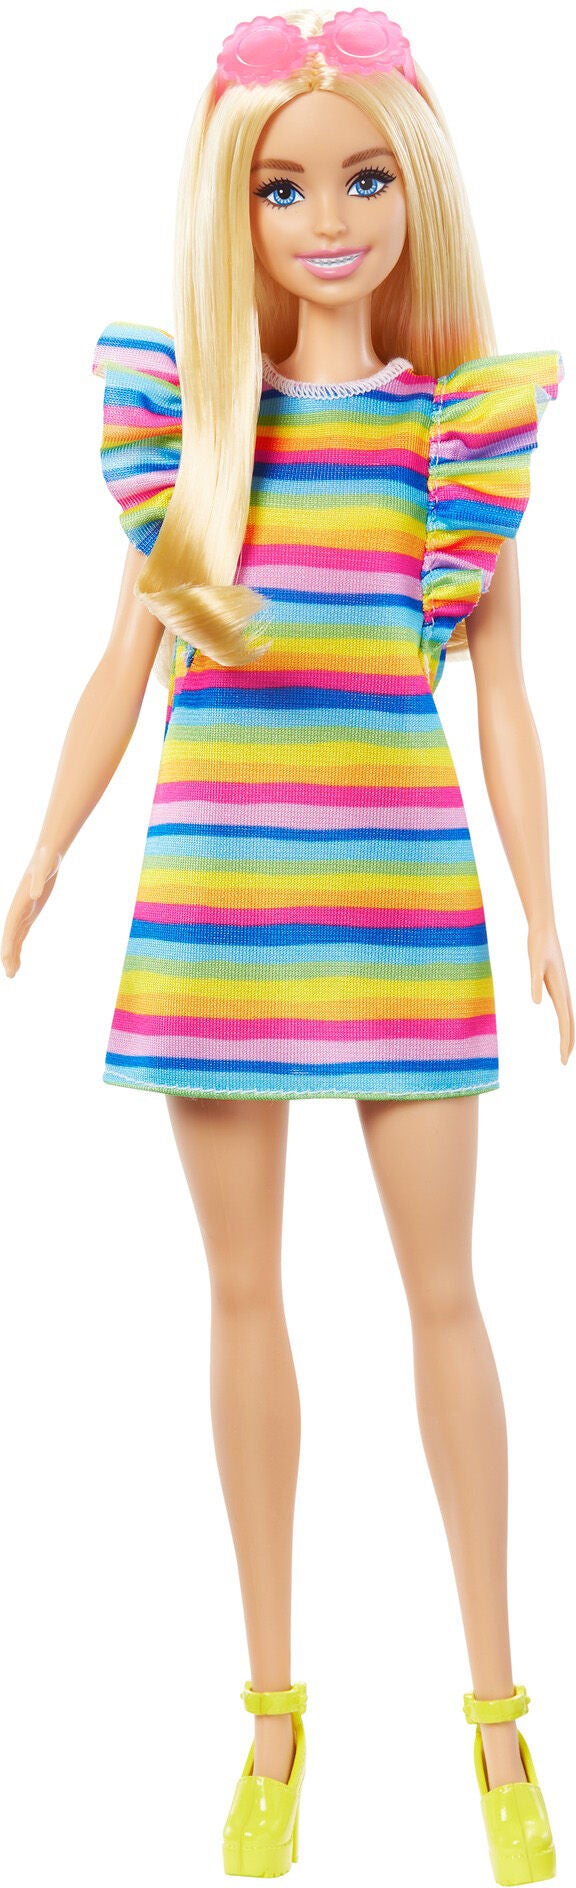 Barbie Fashionista Puppe mit Regenbogenkleid von Barbie